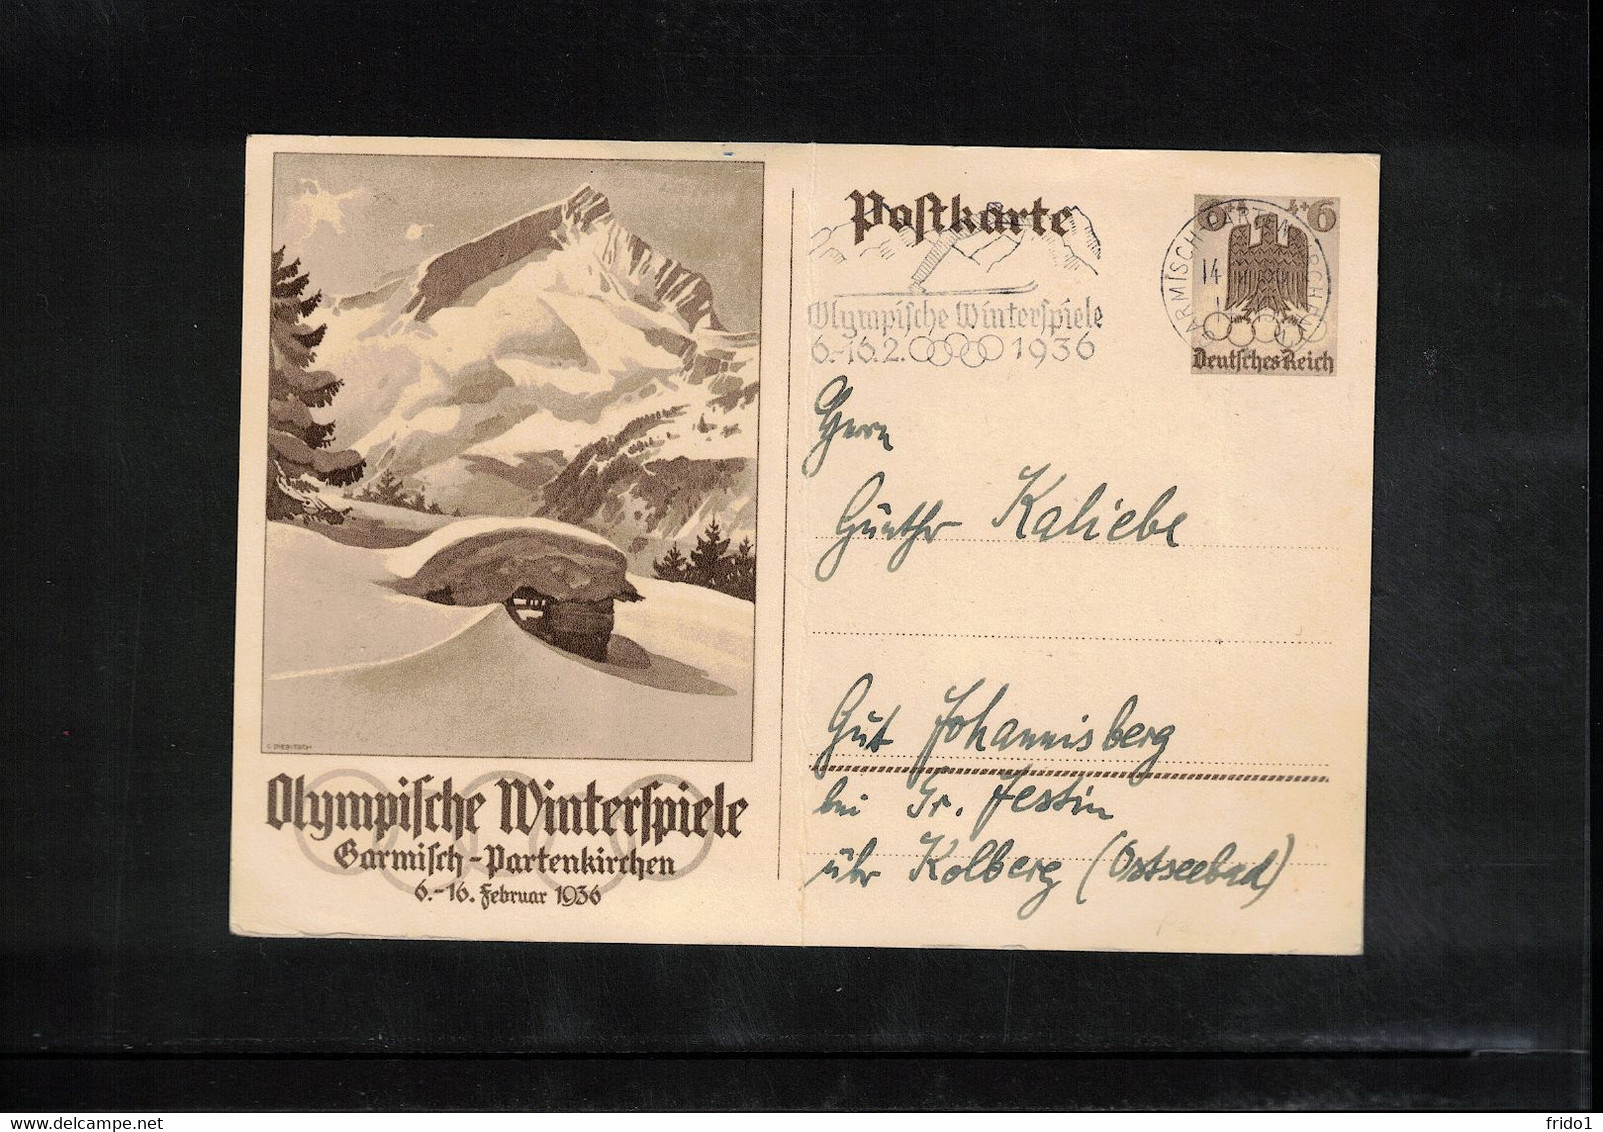 Germany / Deutschland 1936 Olympic Games Garmisch-Partenkirchen - Postal Stationery Postcard - Interesting Postmark - Inverno1936: Garmisch-Partenkirchen